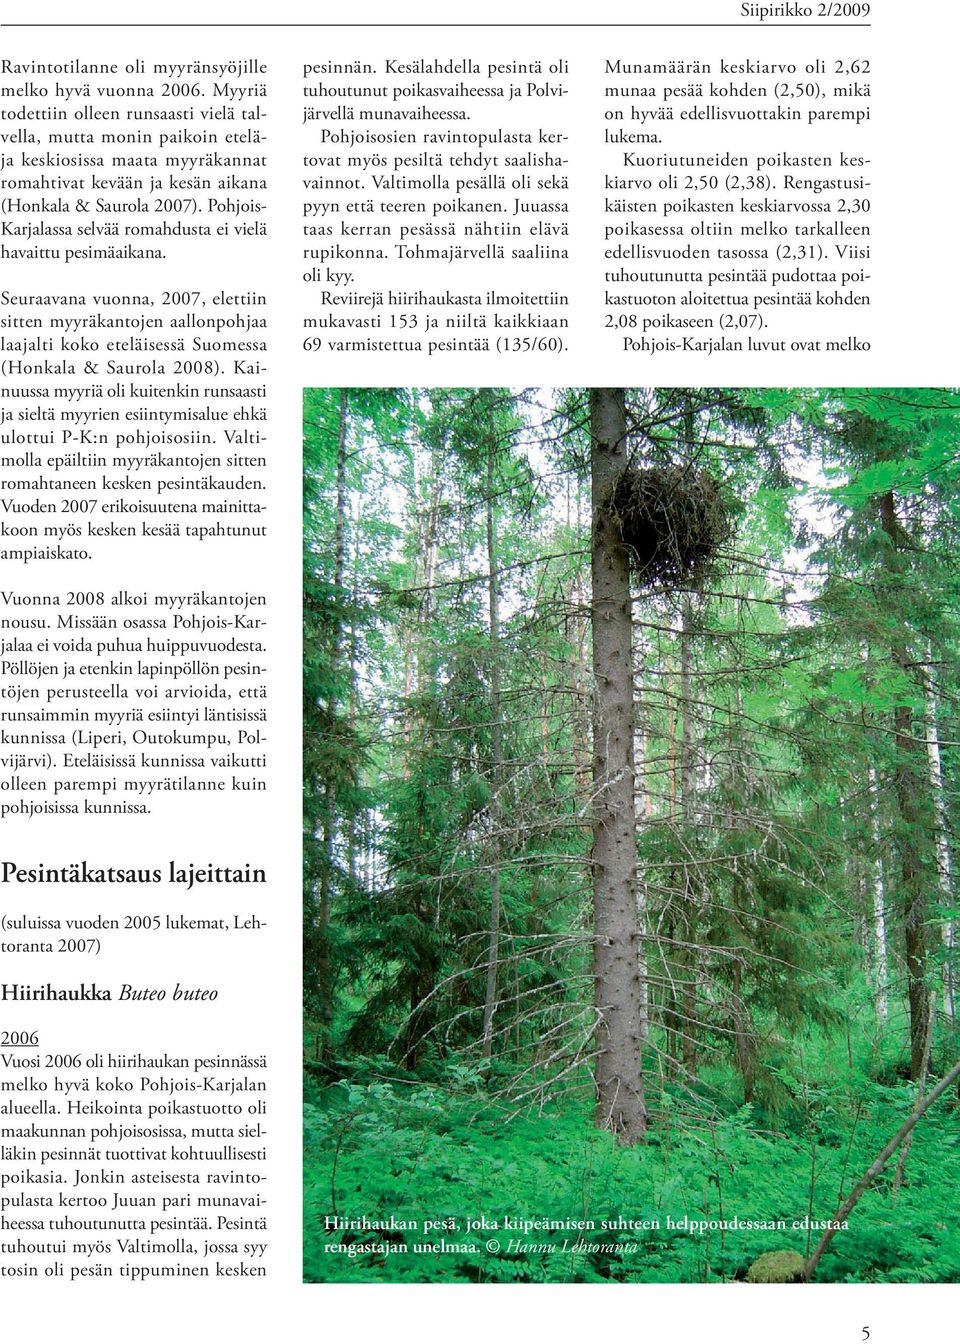 Pohjois- Karjalassa selvää romahdusta ei vielä havaittu pesimäaikana. Seuraavana vuonna, 2007, elettiin sitten myyräkantojen aallonpohjaa laajalti koko eteläisessä Suomessa (Honkala & Saurola 2008).